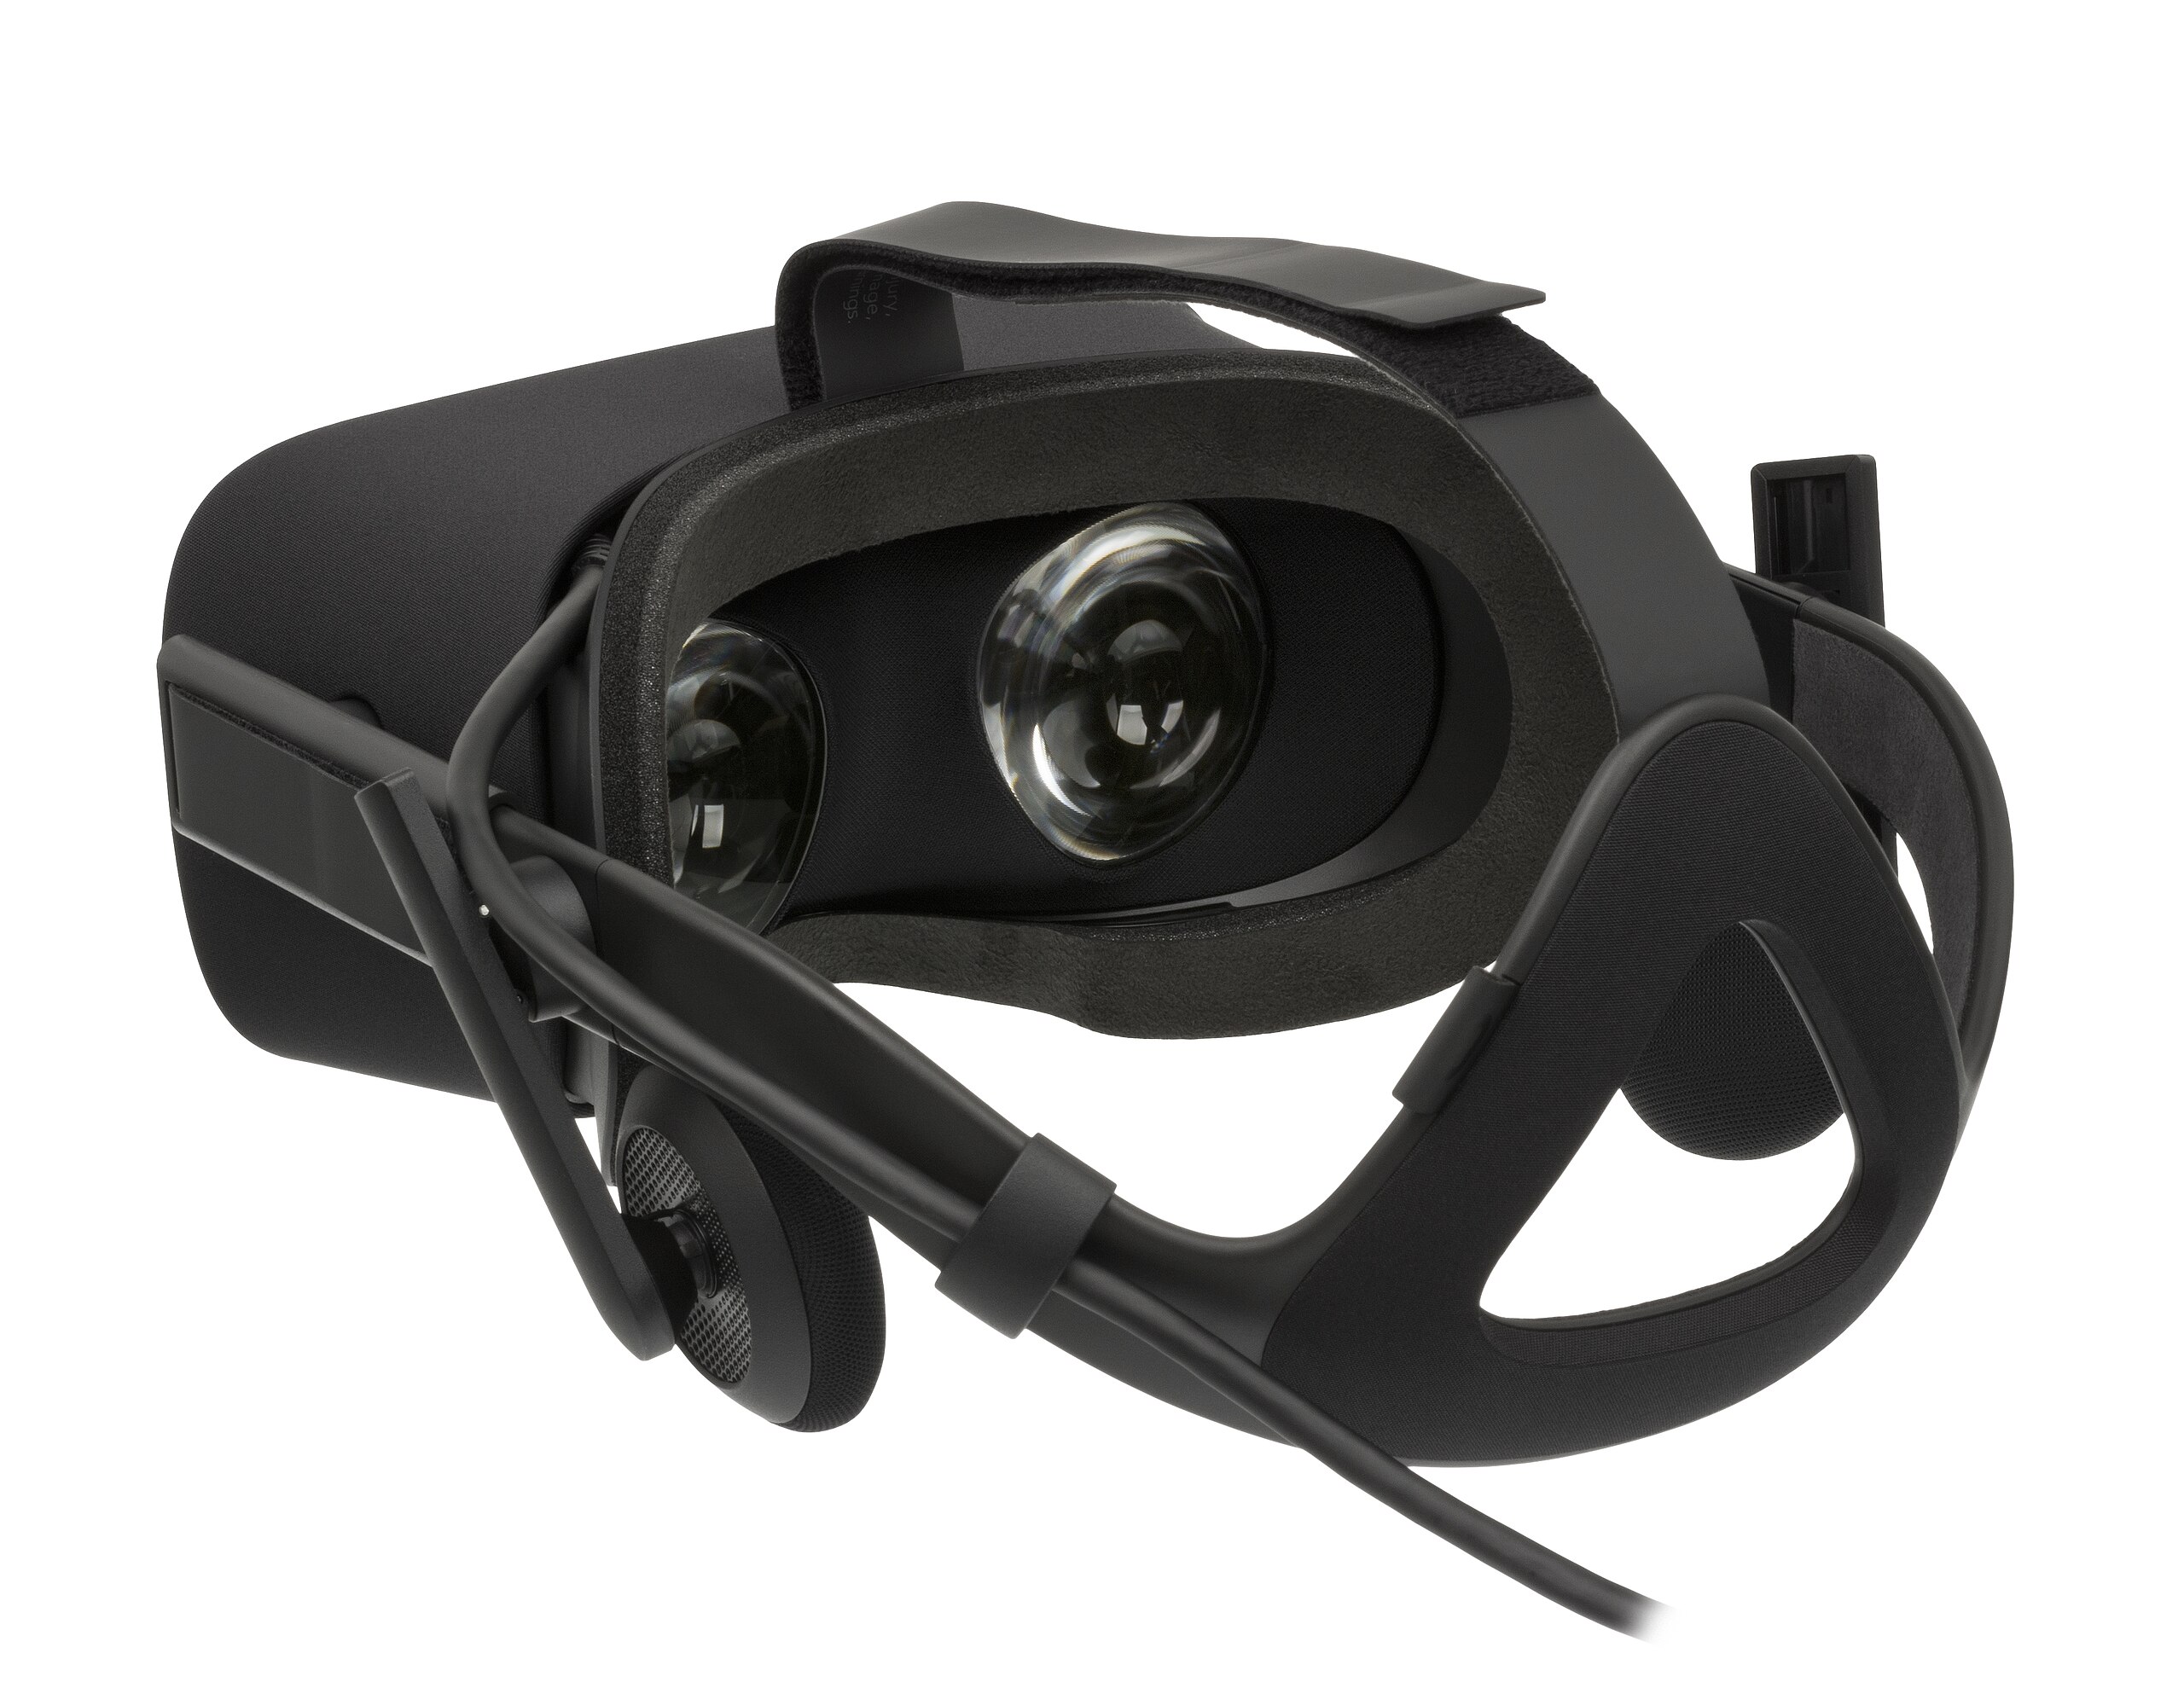 File:Oculus-Rift-CV1-Headset-Back.jpg Commons